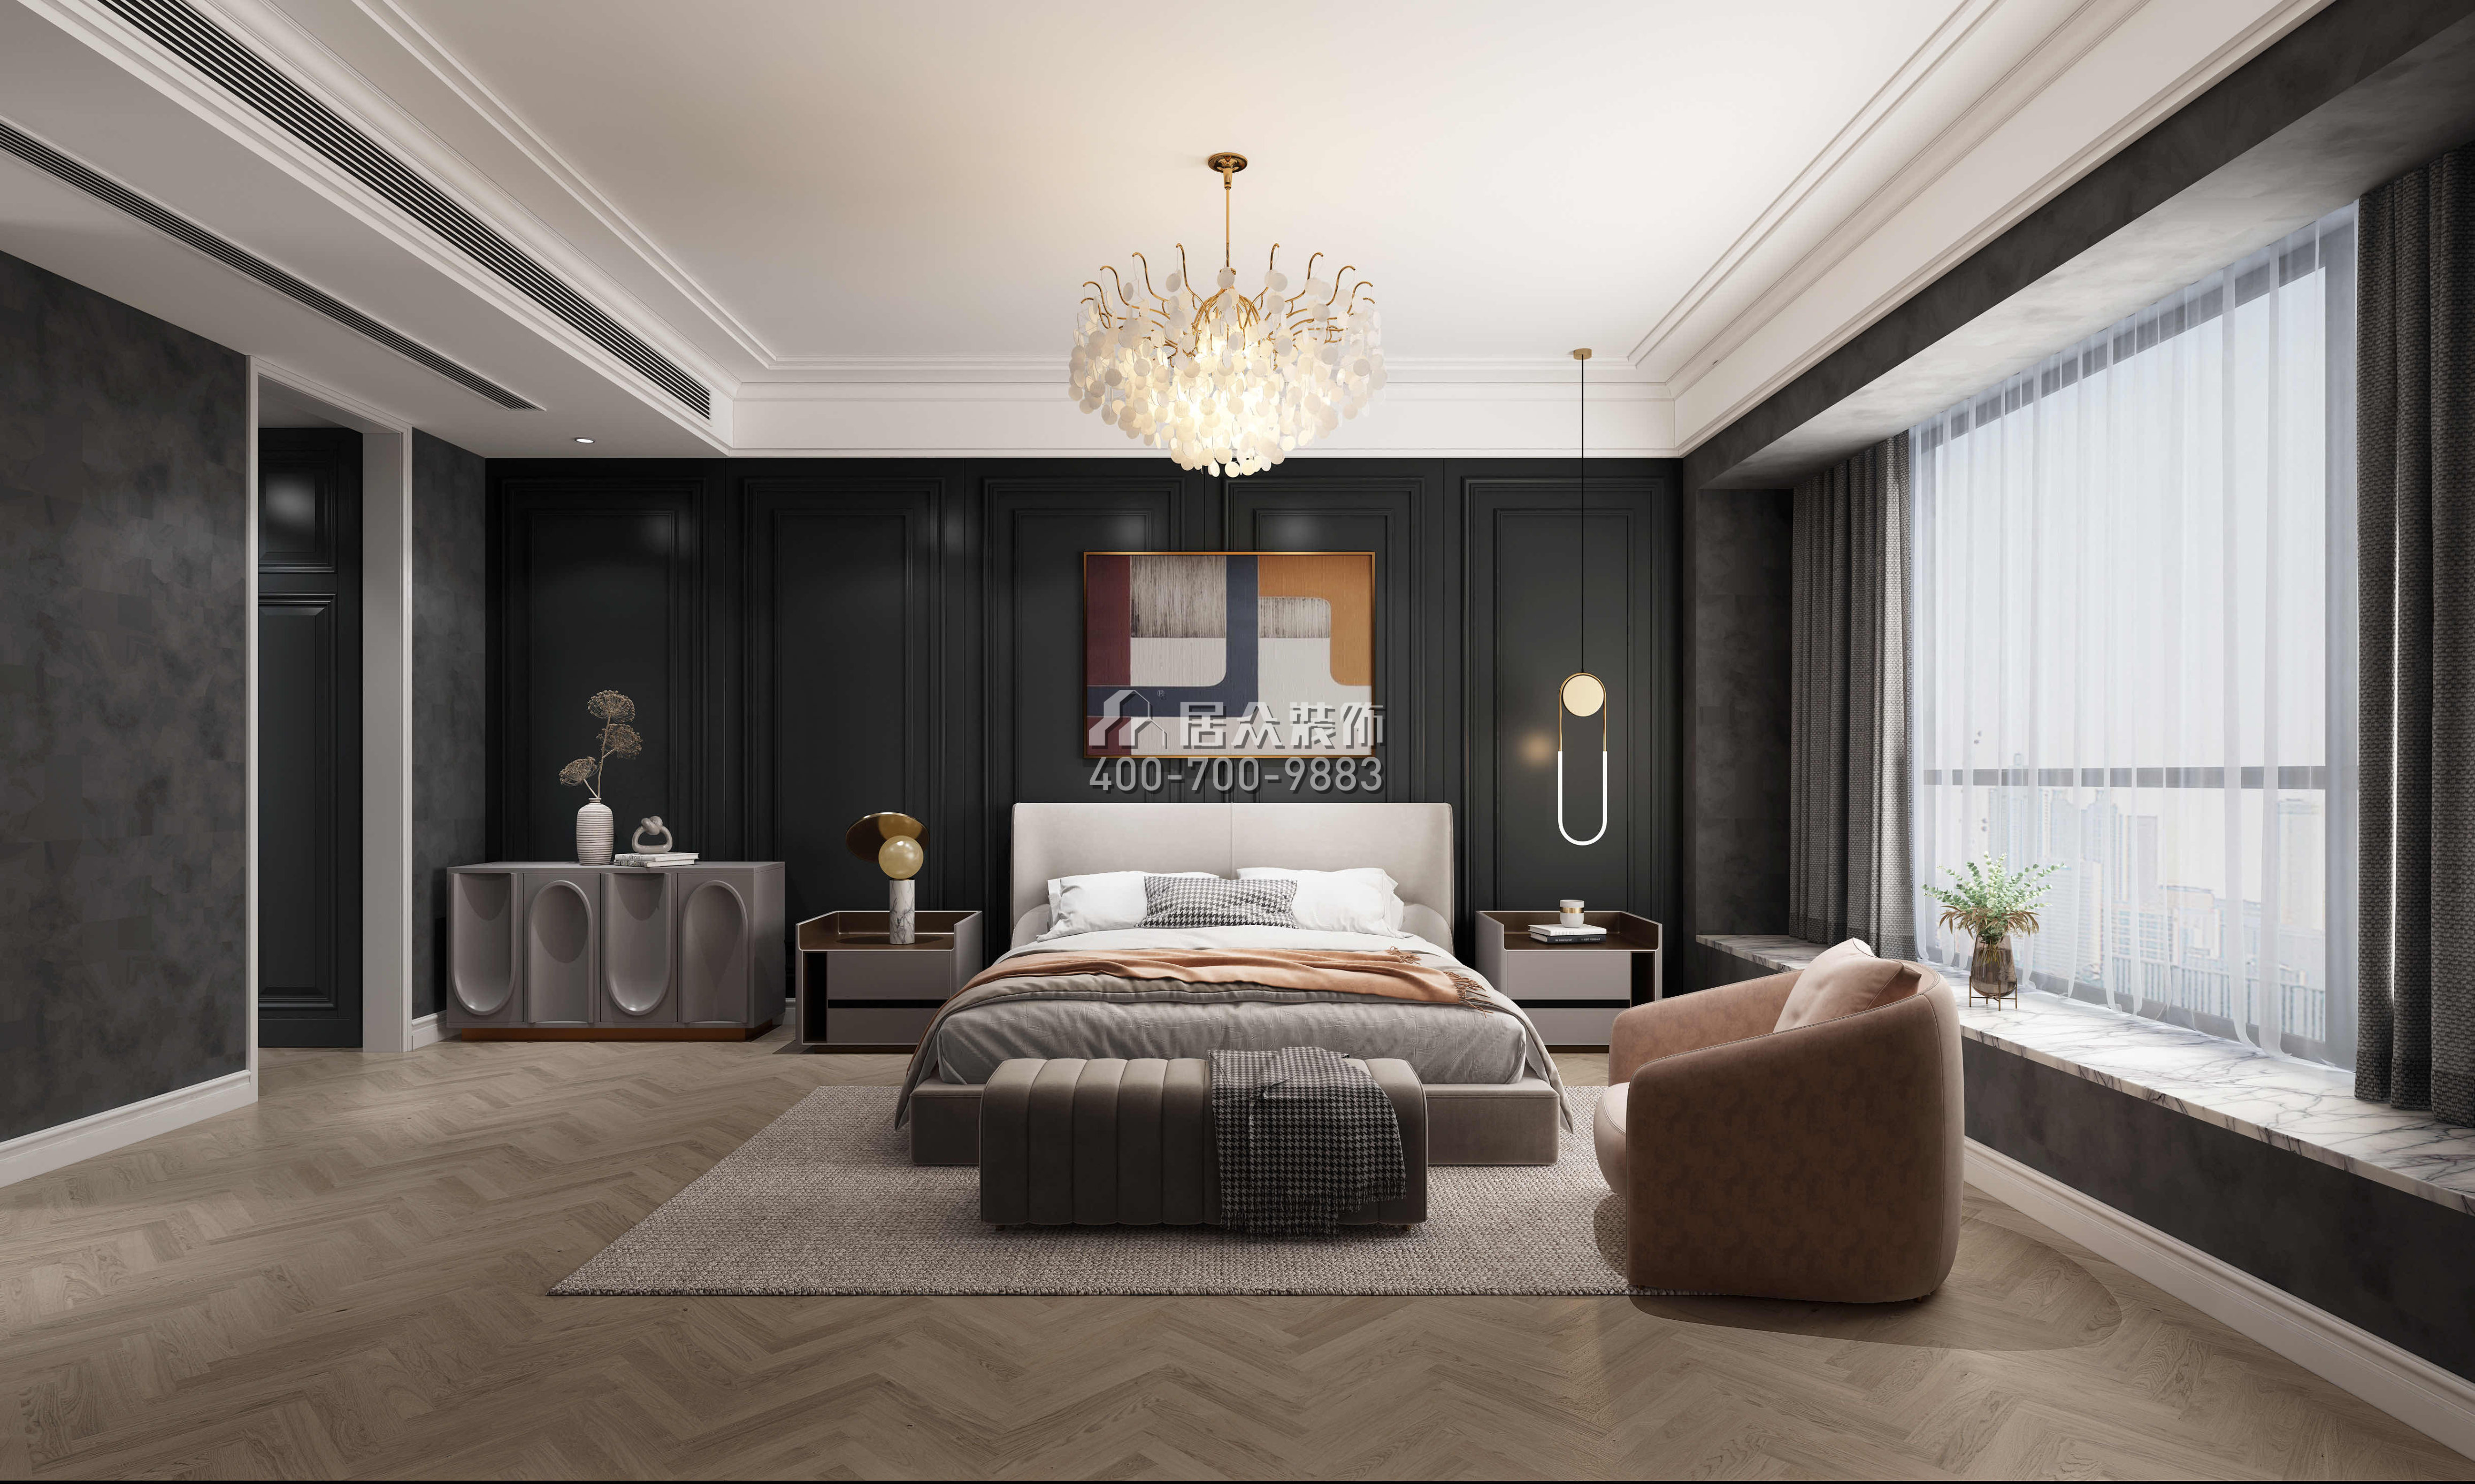 華潤城潤府156平方米歐式風格平層戶型臥室裝修效果圖